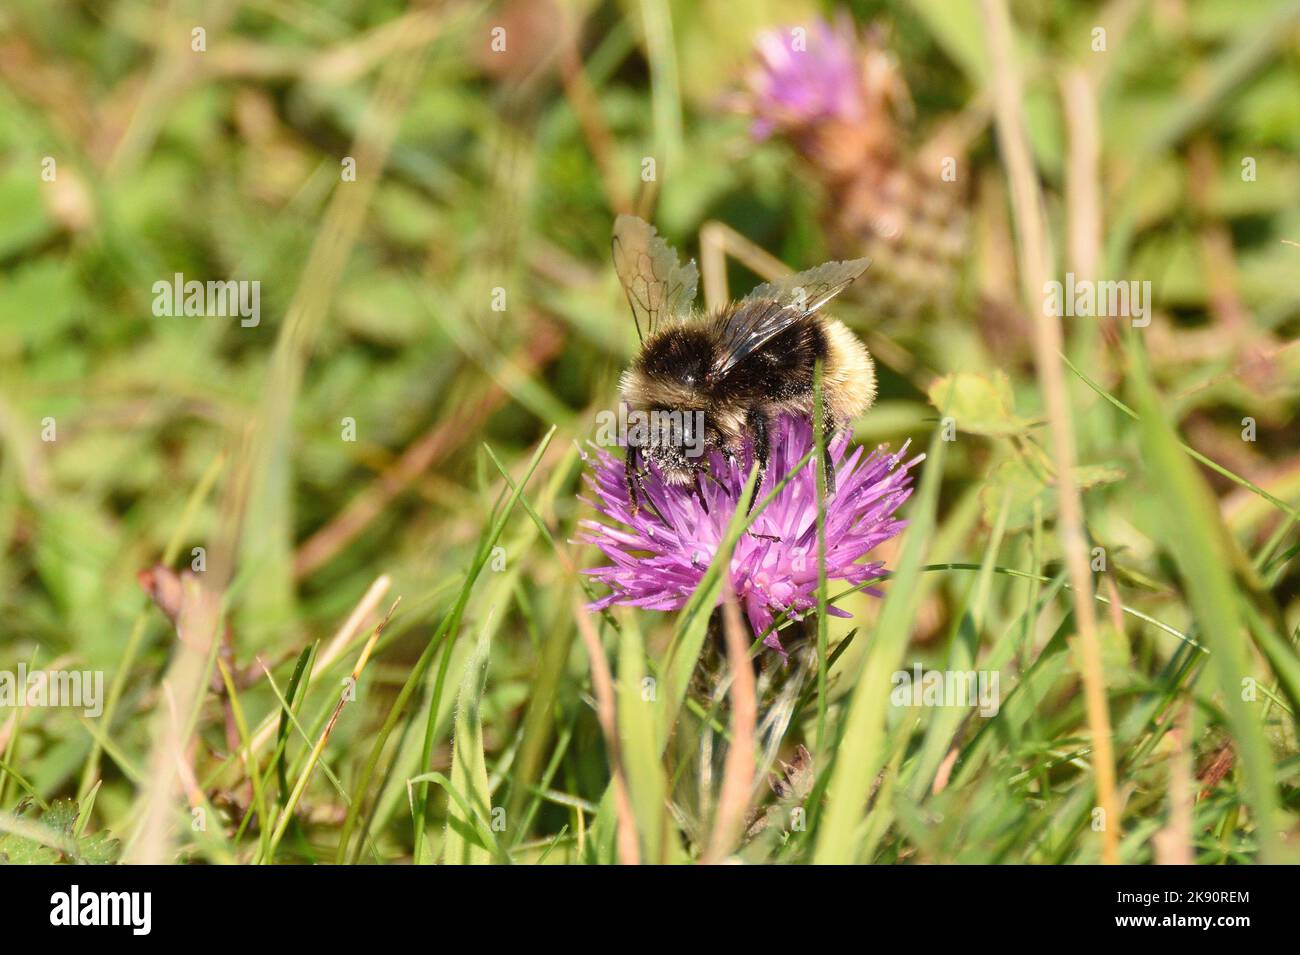 Gipsy Cuckoo abeille se nourrissant du pollen et du nectar d'une fleur sauvage. Hertfordshire, Angleterre, Royaume-Uni. Banque D'Images